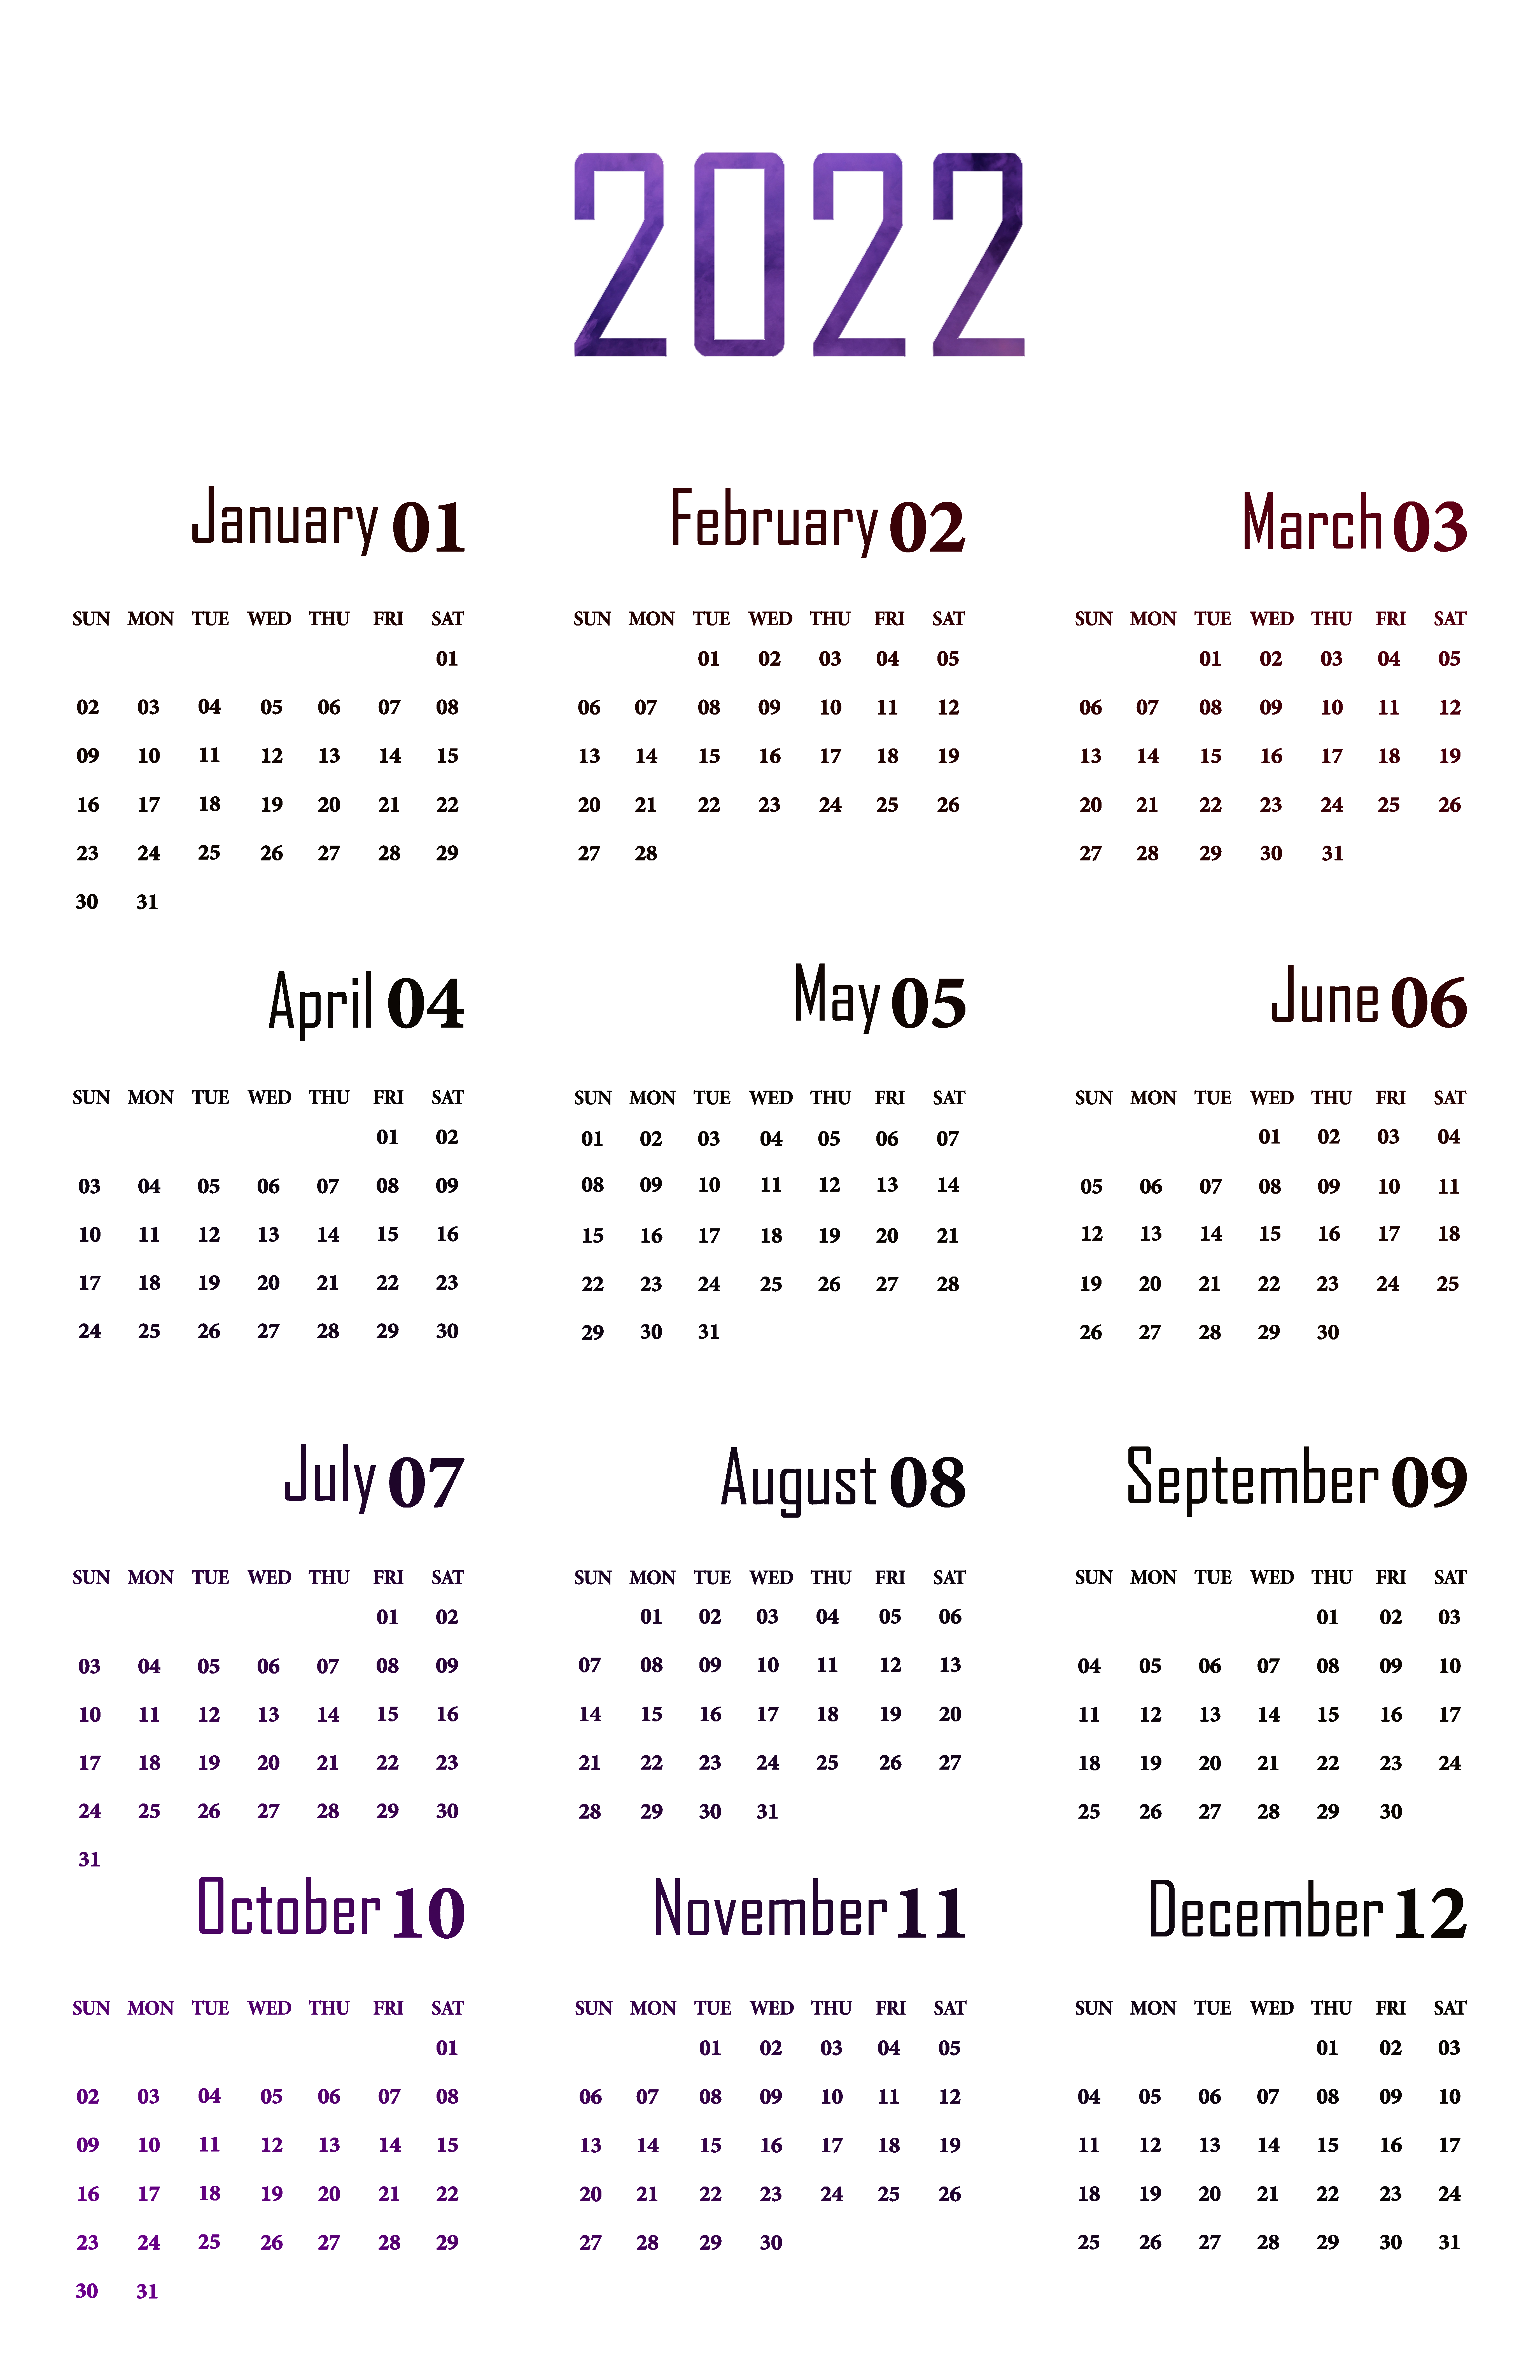 Kalender 2022 Unduh PNG Image